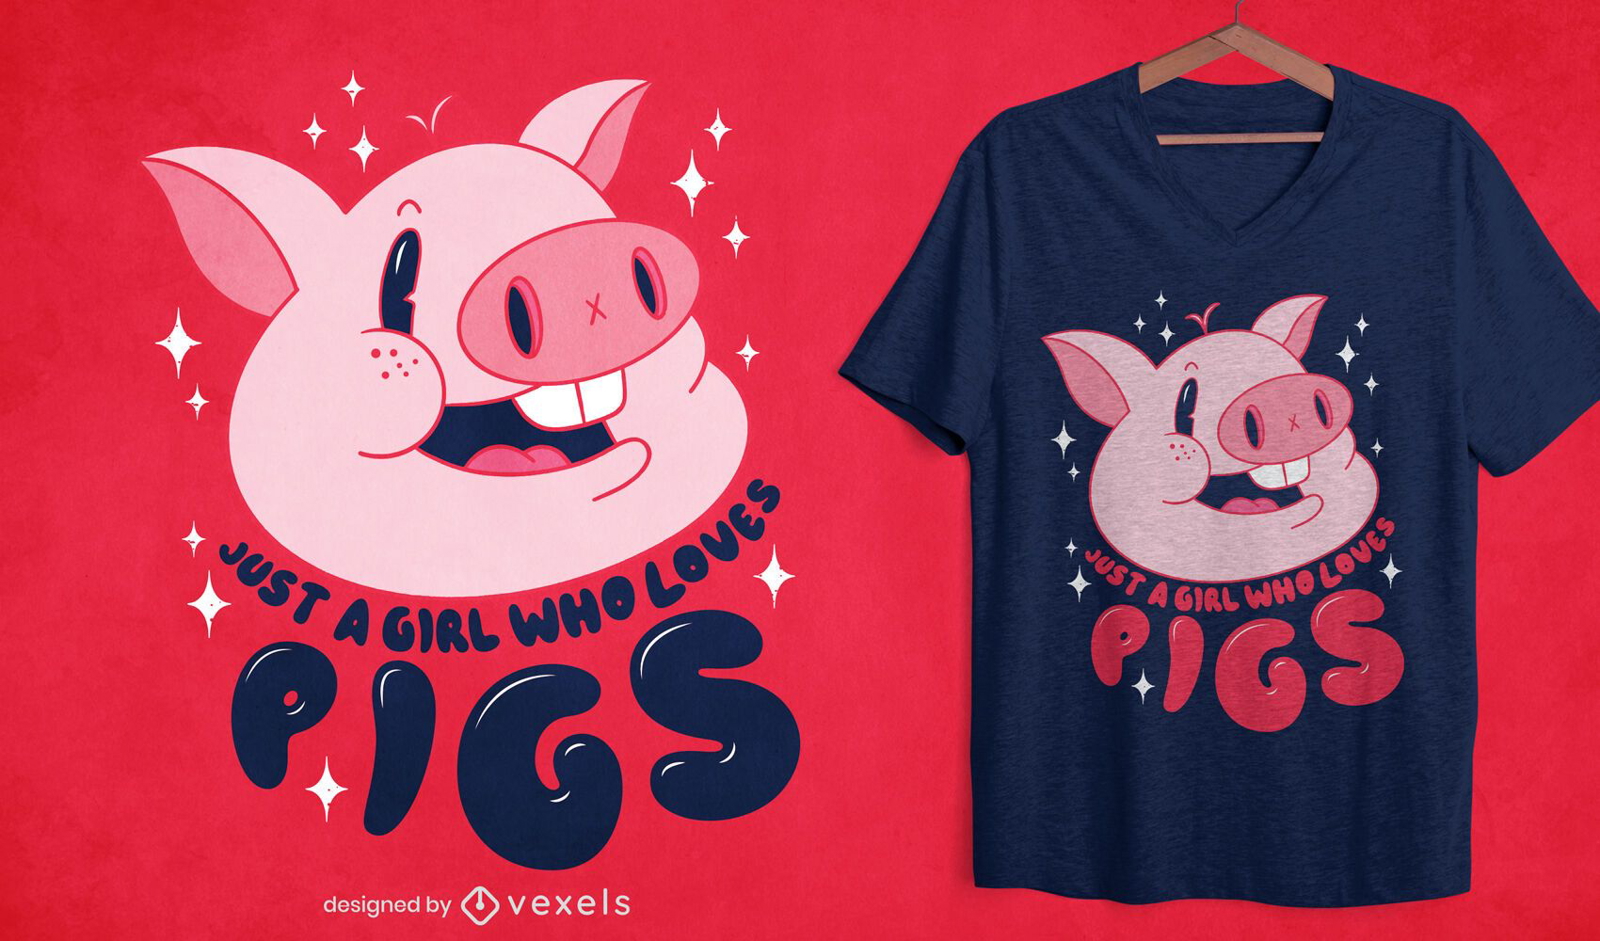 Girl loves pigs t-shirt design